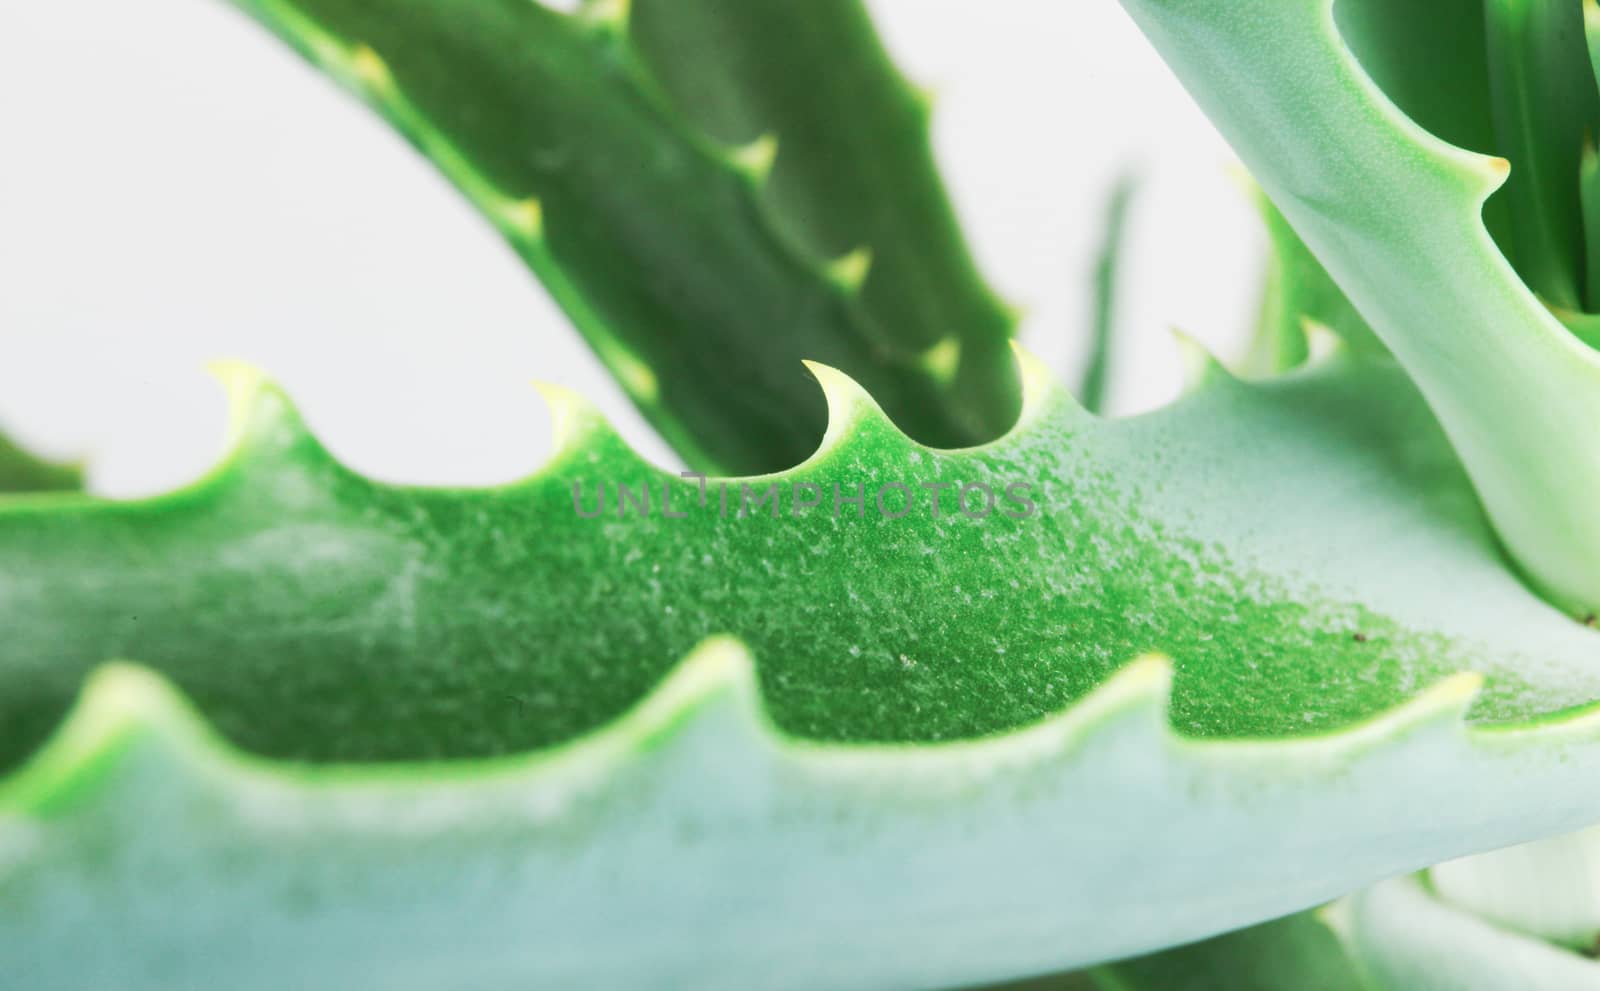 Close-Up Of Aloe Vera Slice On White Background